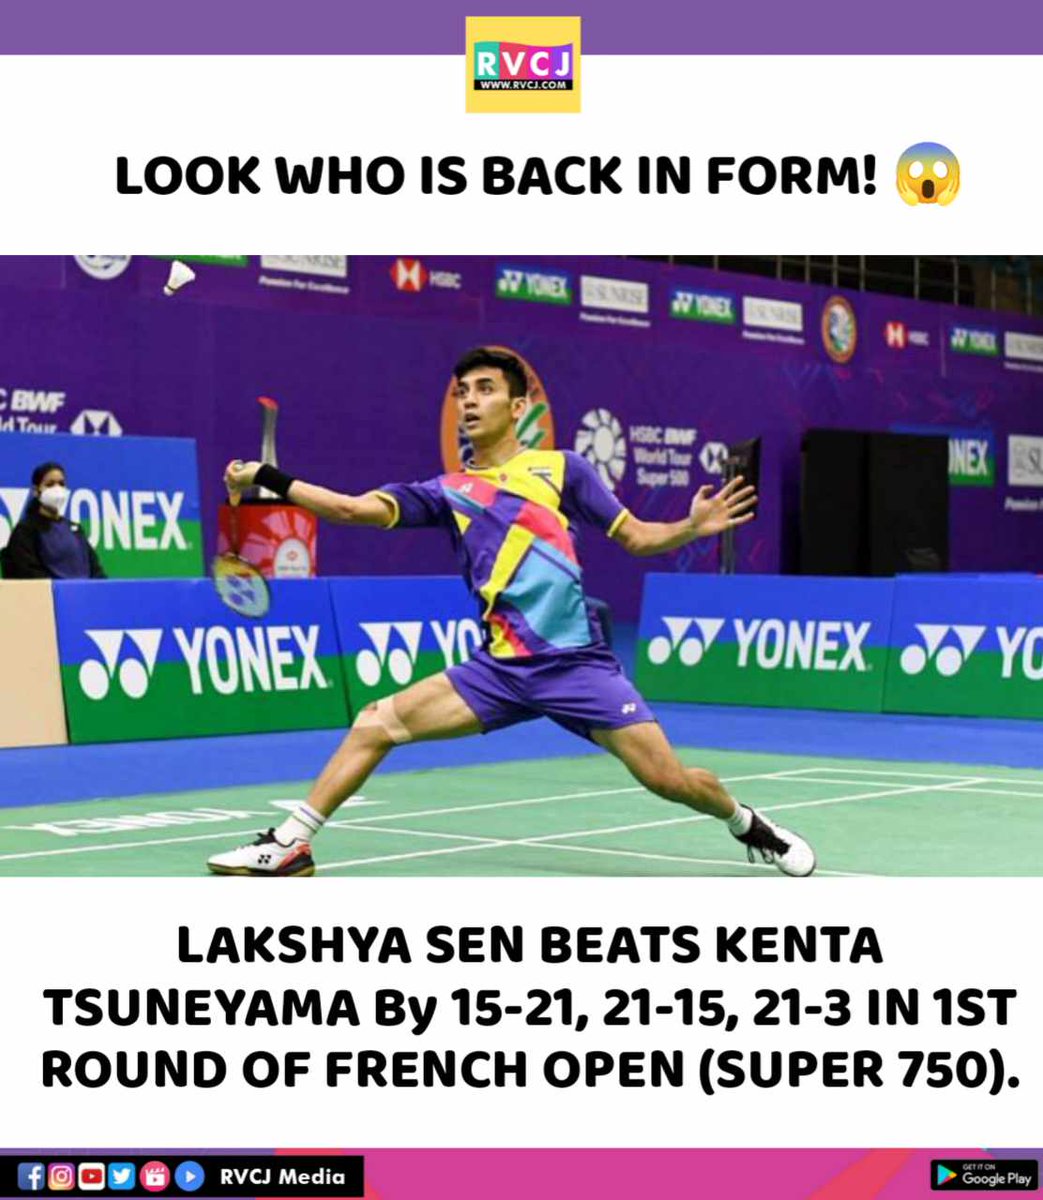 Lakshay sen beats kenta
#lakshyasen #kenta